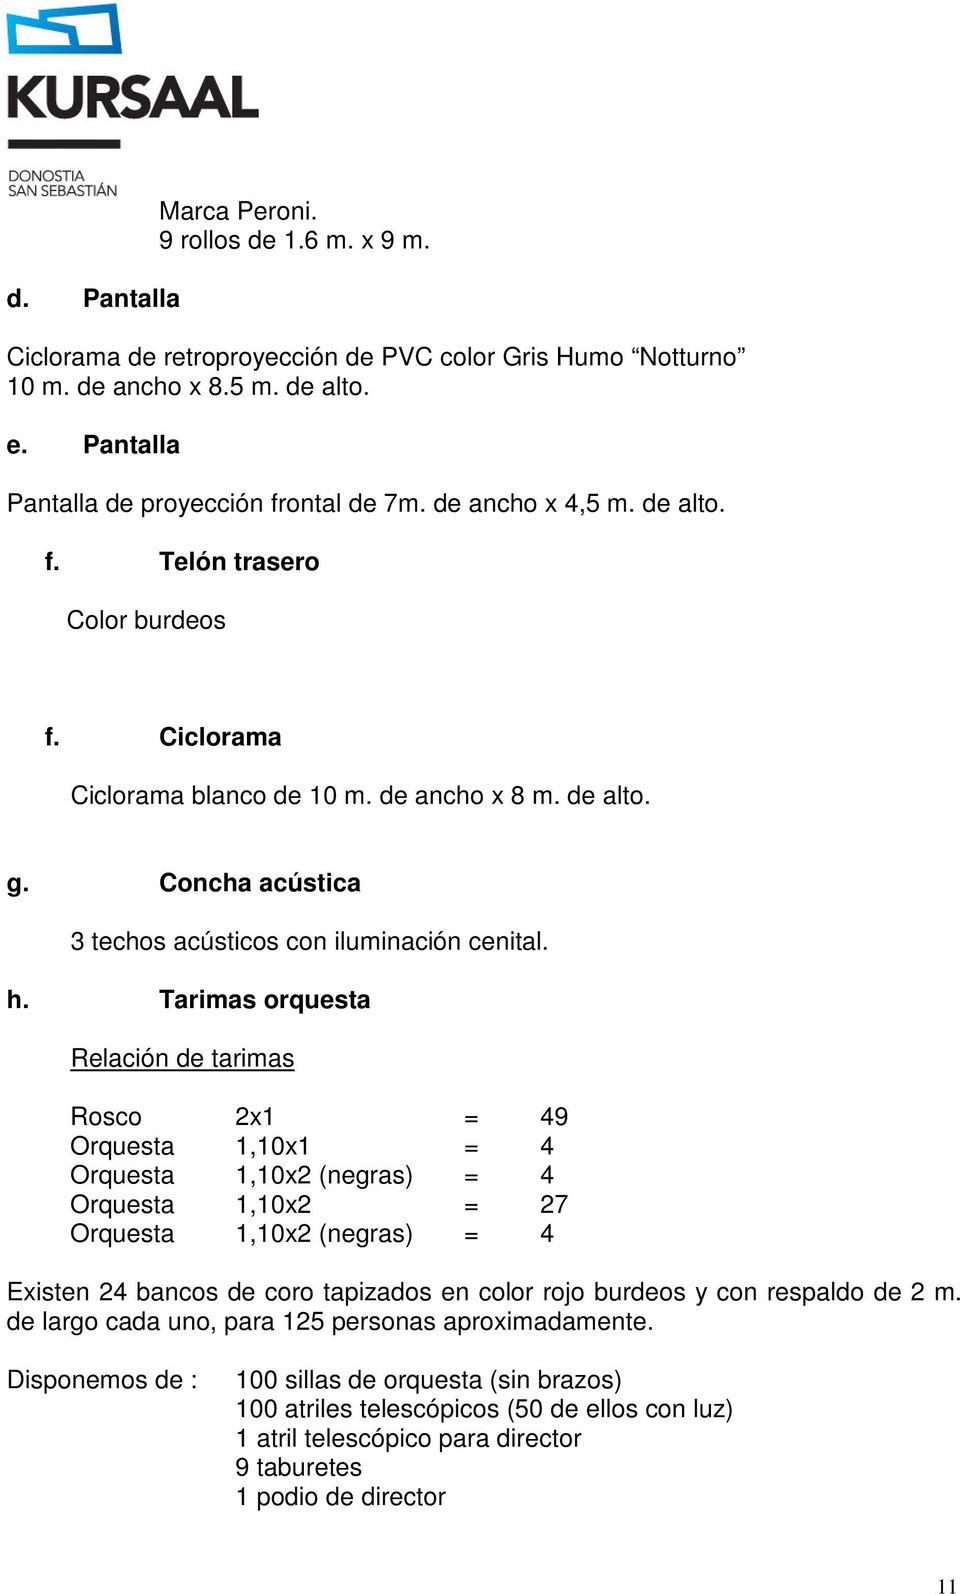 Tarimas orquesta Relación de tarimas Rosco 2x1 = 49 Orquesta 1,10x1 = 4 Orquesta 1,10x2 (negras) = 4 Orquesta 1,10x2 = 27 Orquesta 1,10x2 (negras) = 4 Existen 24 bancos de coro tapizados en color